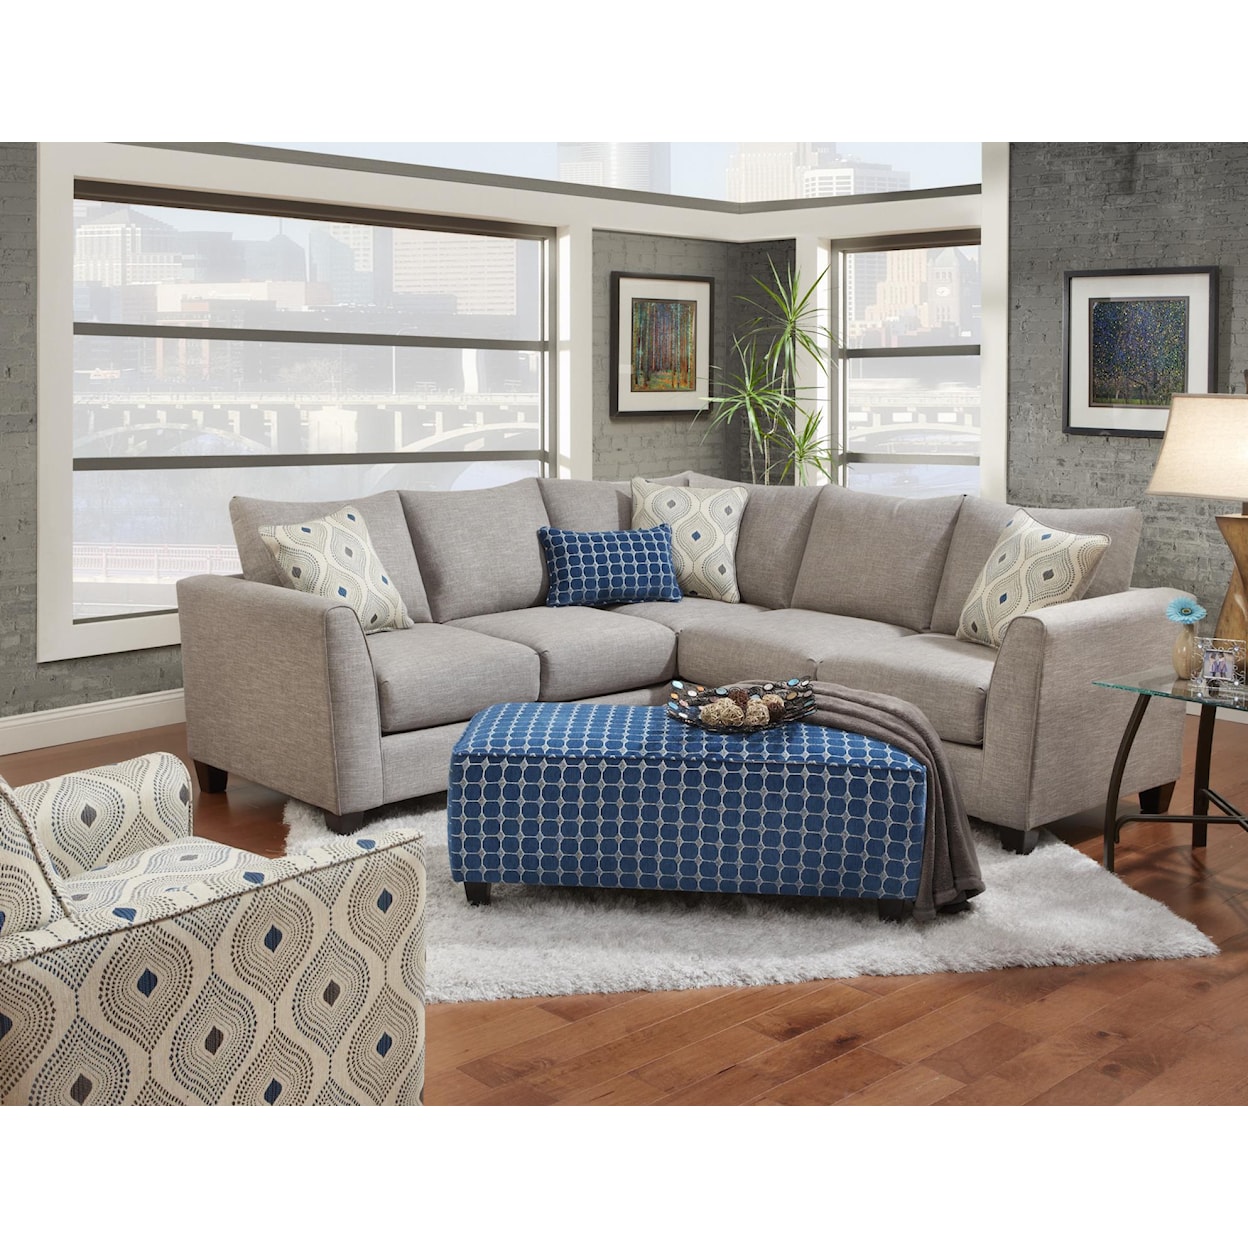 Fusion Furniture 2806 PARADIGM QUARTZ Living Room Group